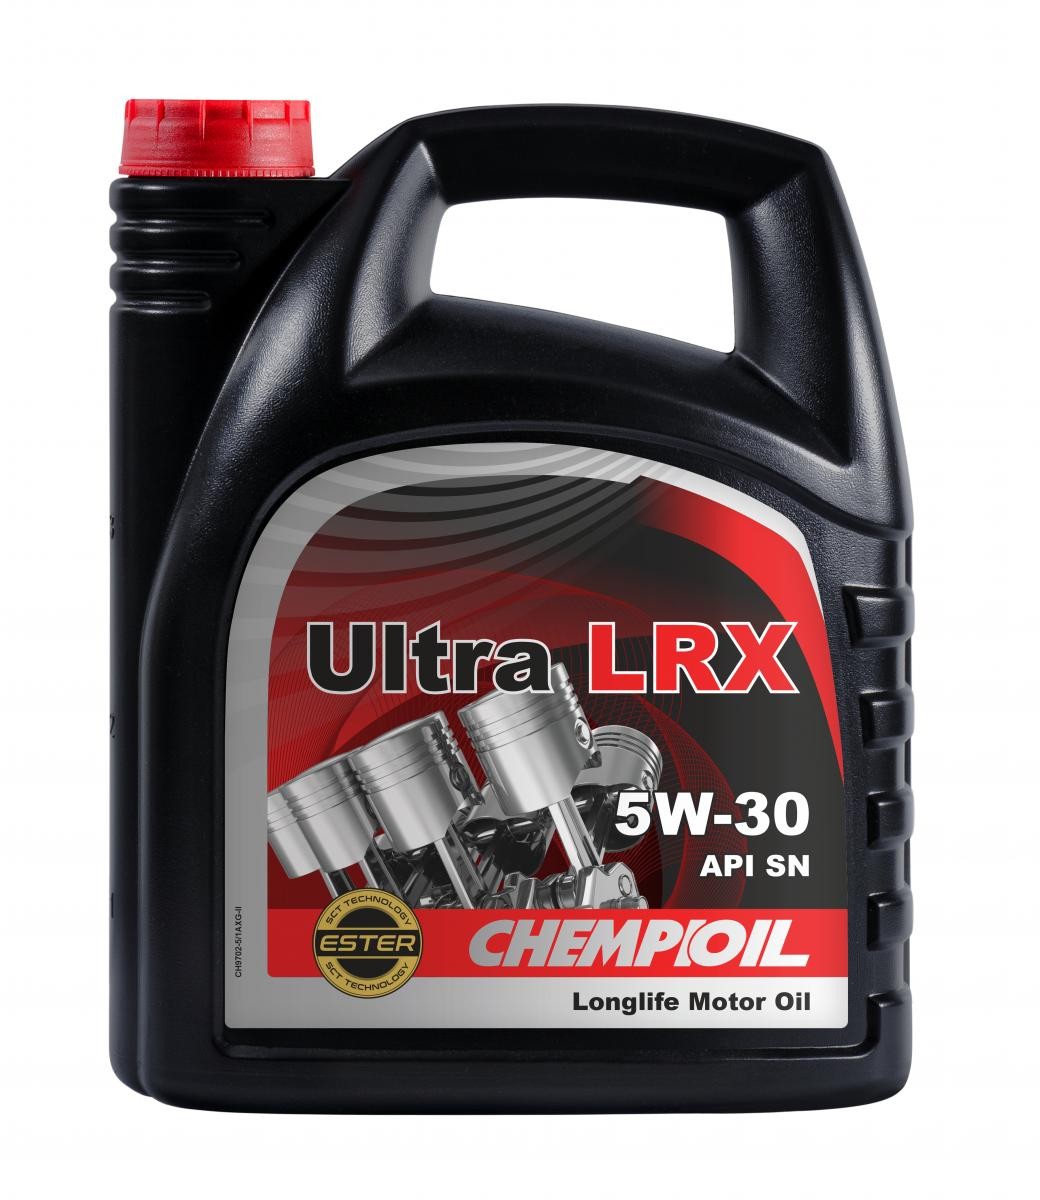 Kaufen Sie Motorenöl CHEMPIOIL CH9702-5 Ultra, LRX 5W-30, 5l